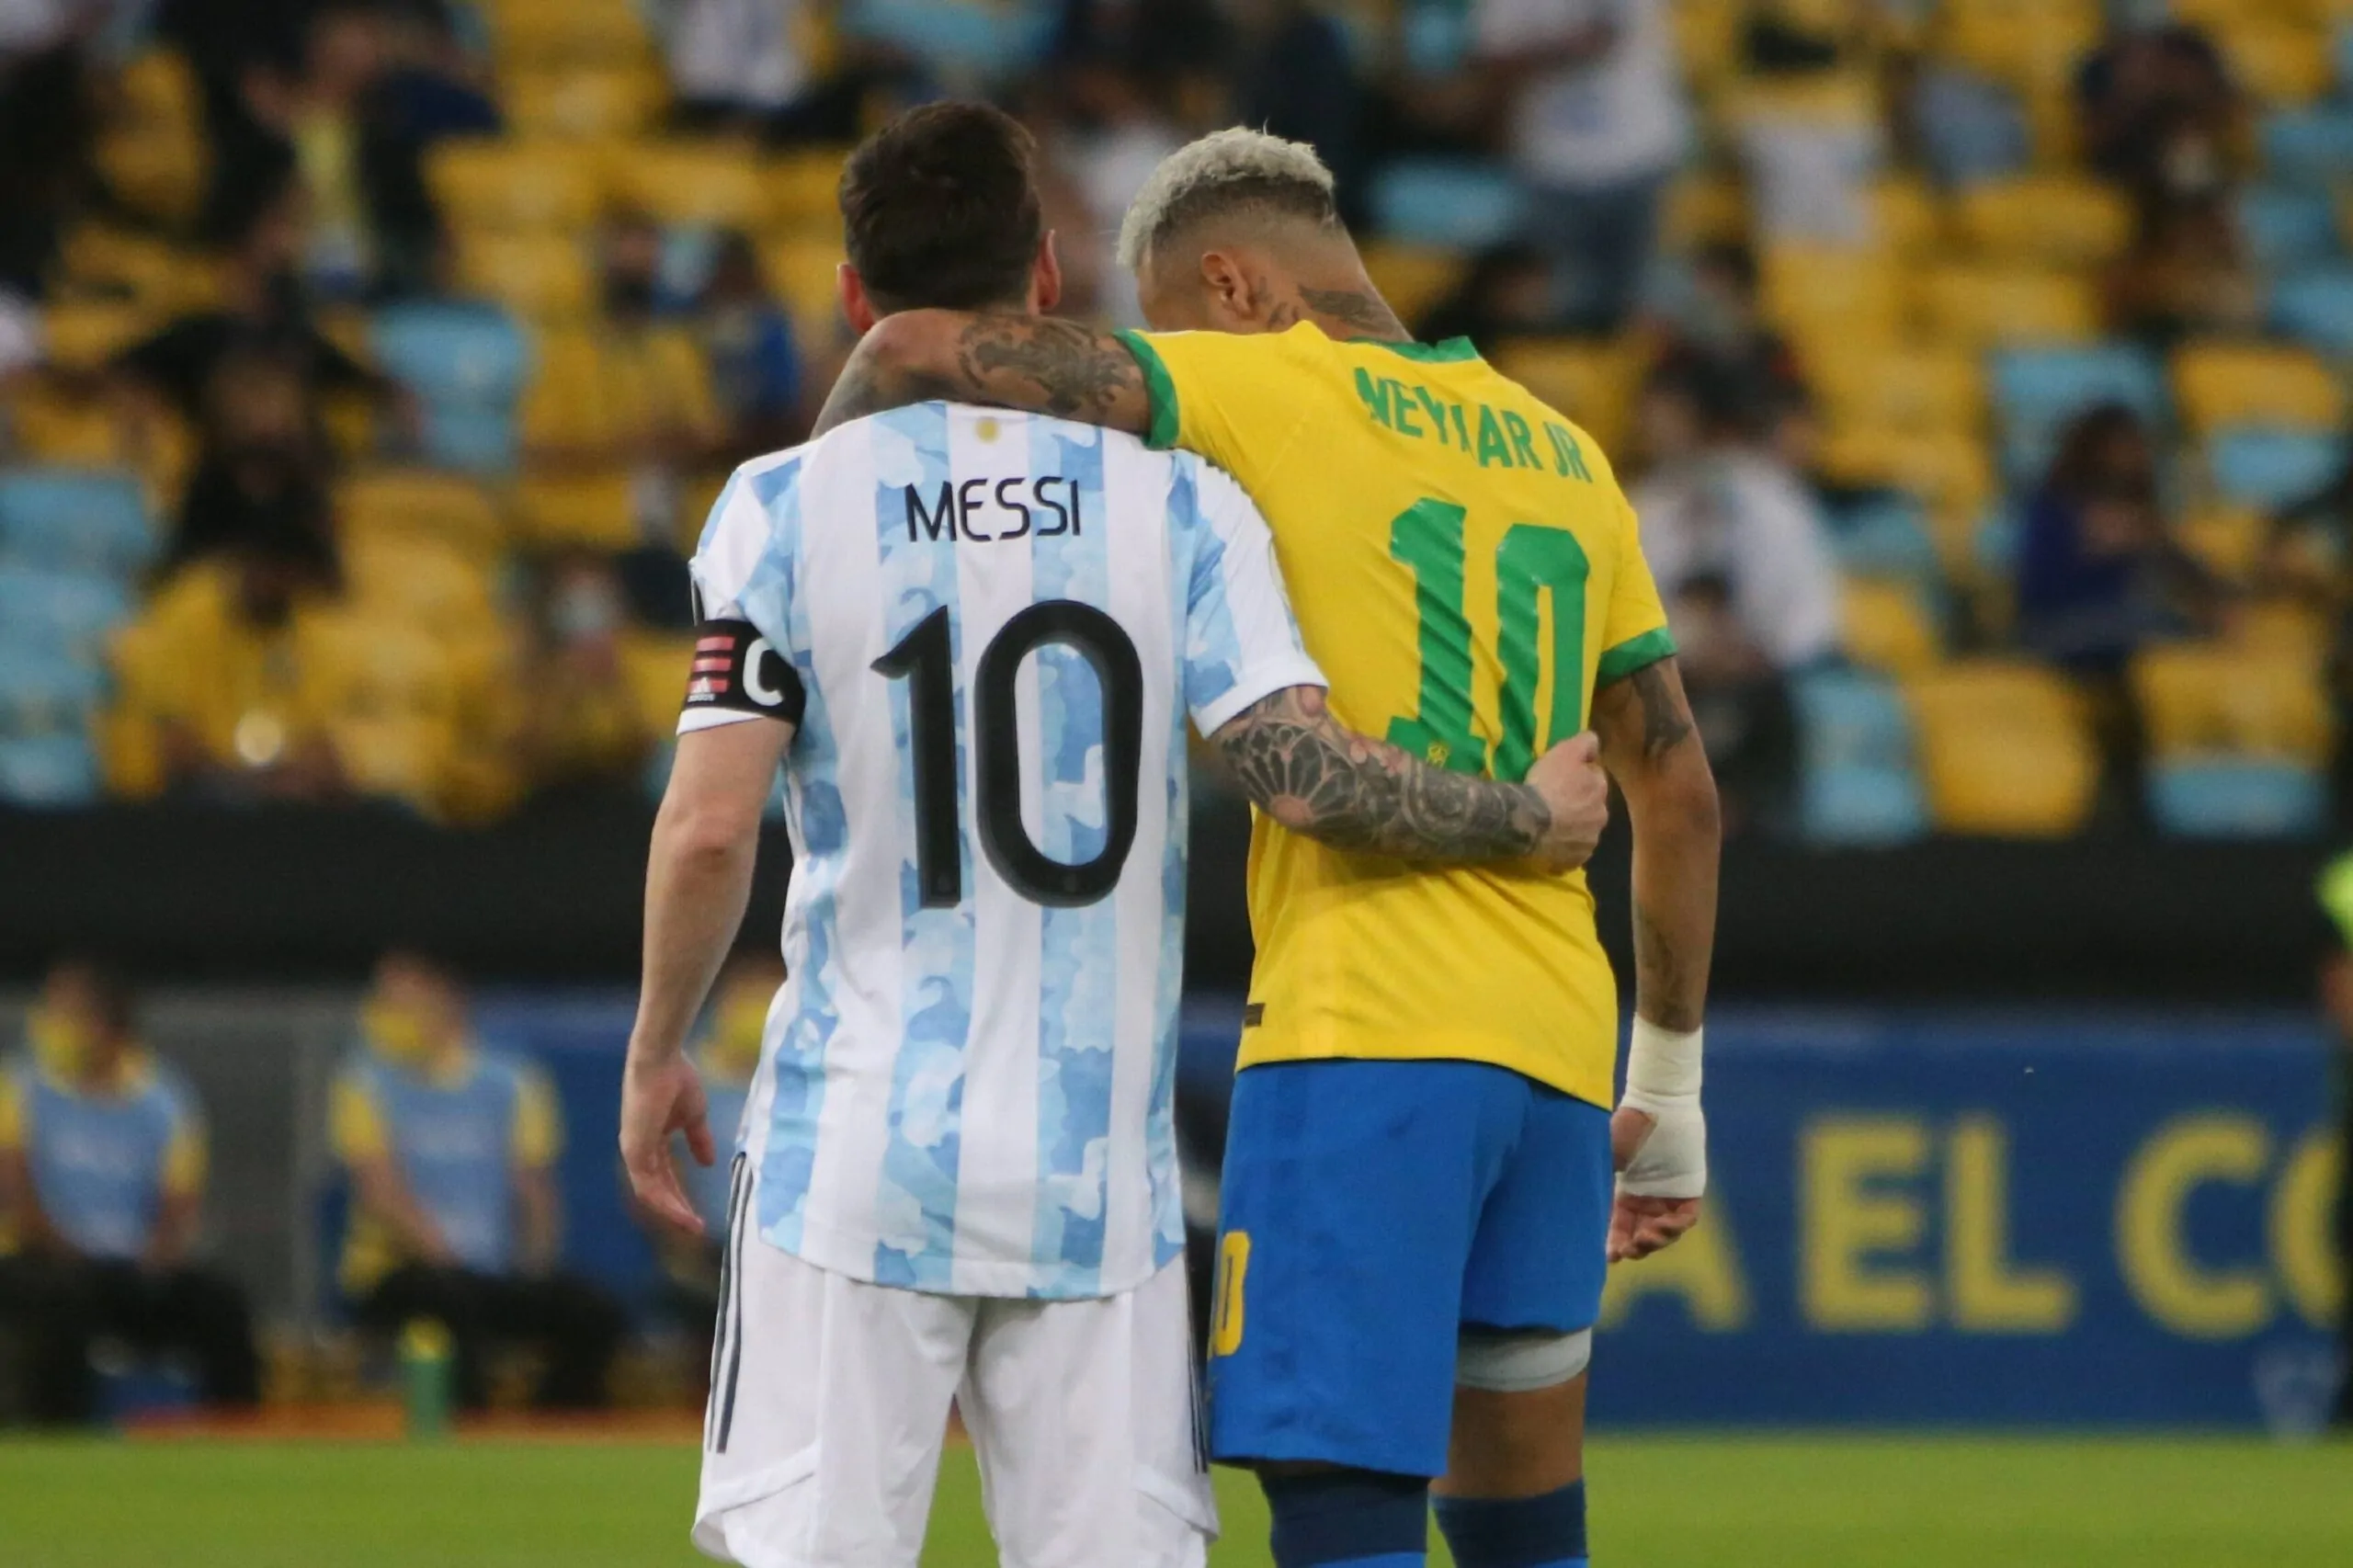 Messi-mania a Parigi: boom di vendite in 24 ore per la maglia dell’argentino!